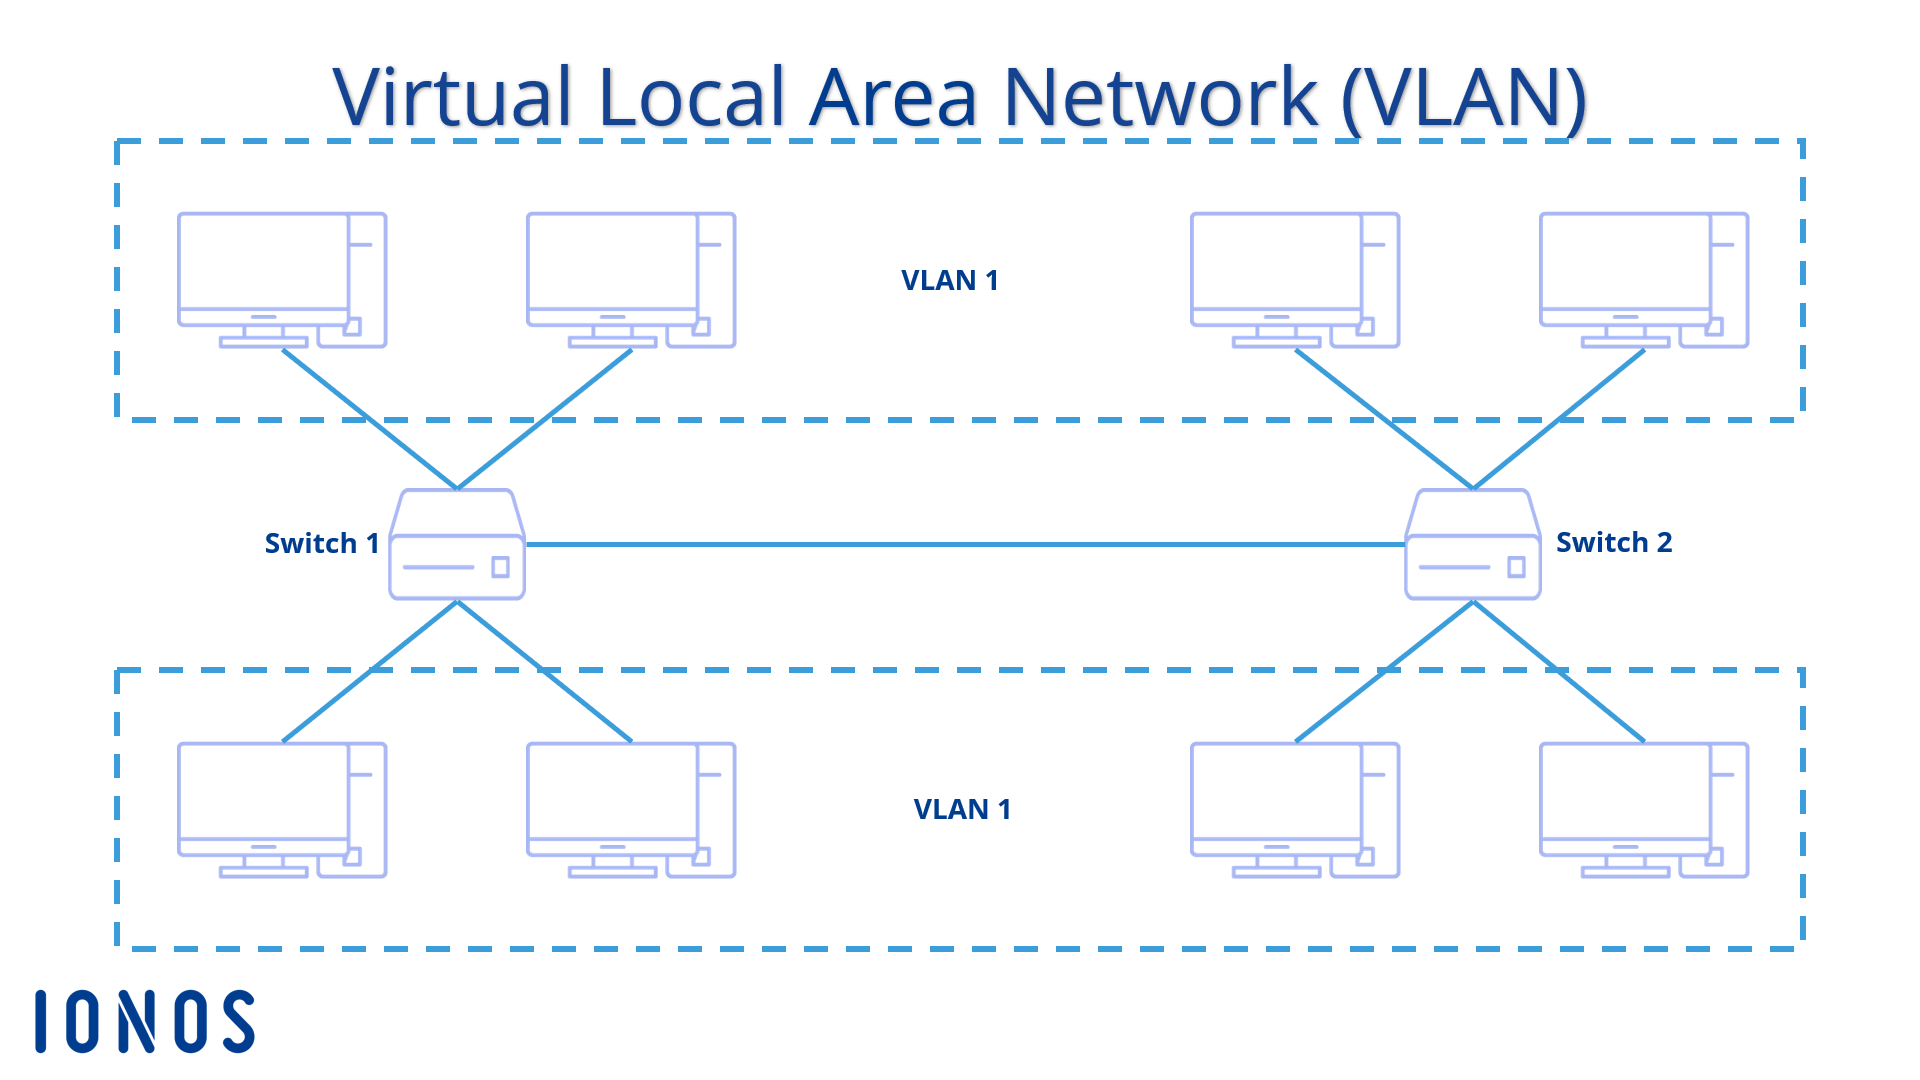 Configuración esquemática de dos VLAN